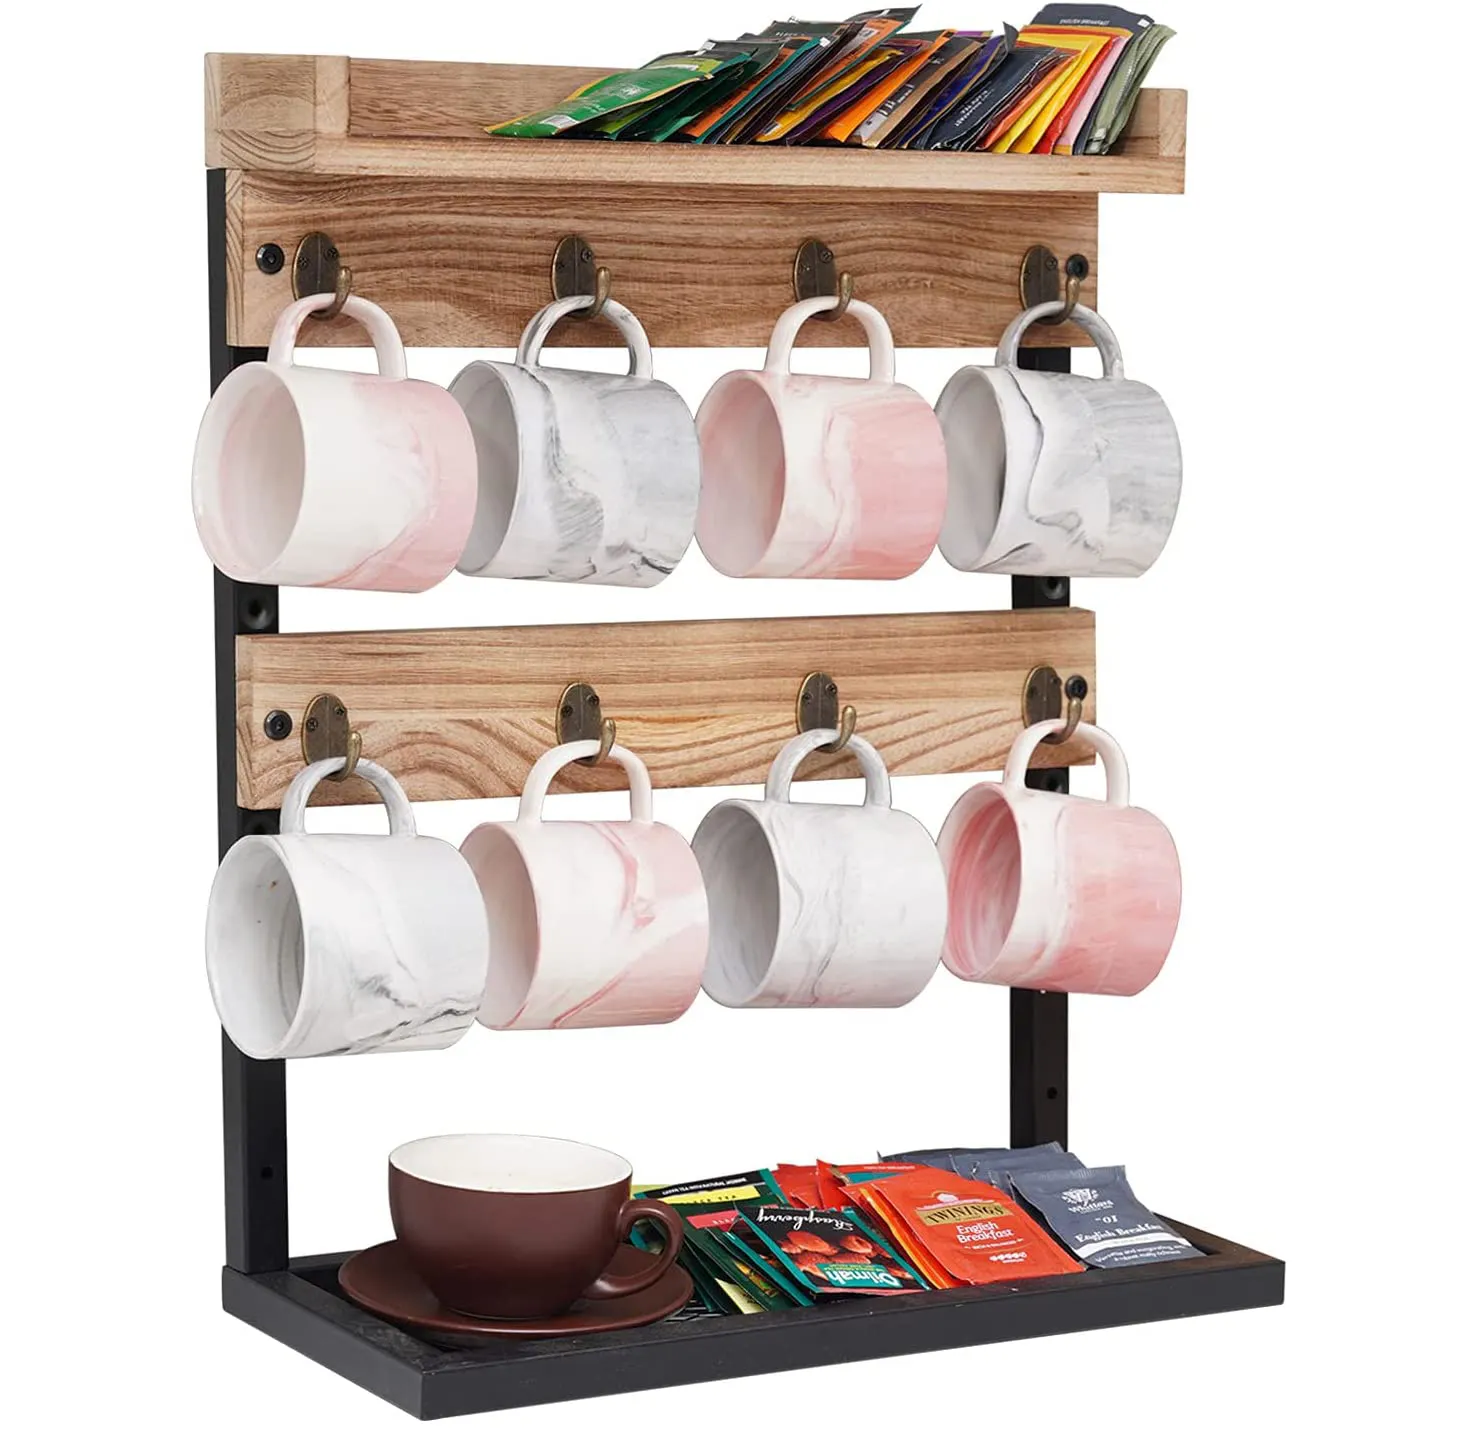 Rustik ahşap tezgah 2 katmanlı kahve kupa fincan rafı tutucu standı Metal çerçeve ve ahşap raf kahve